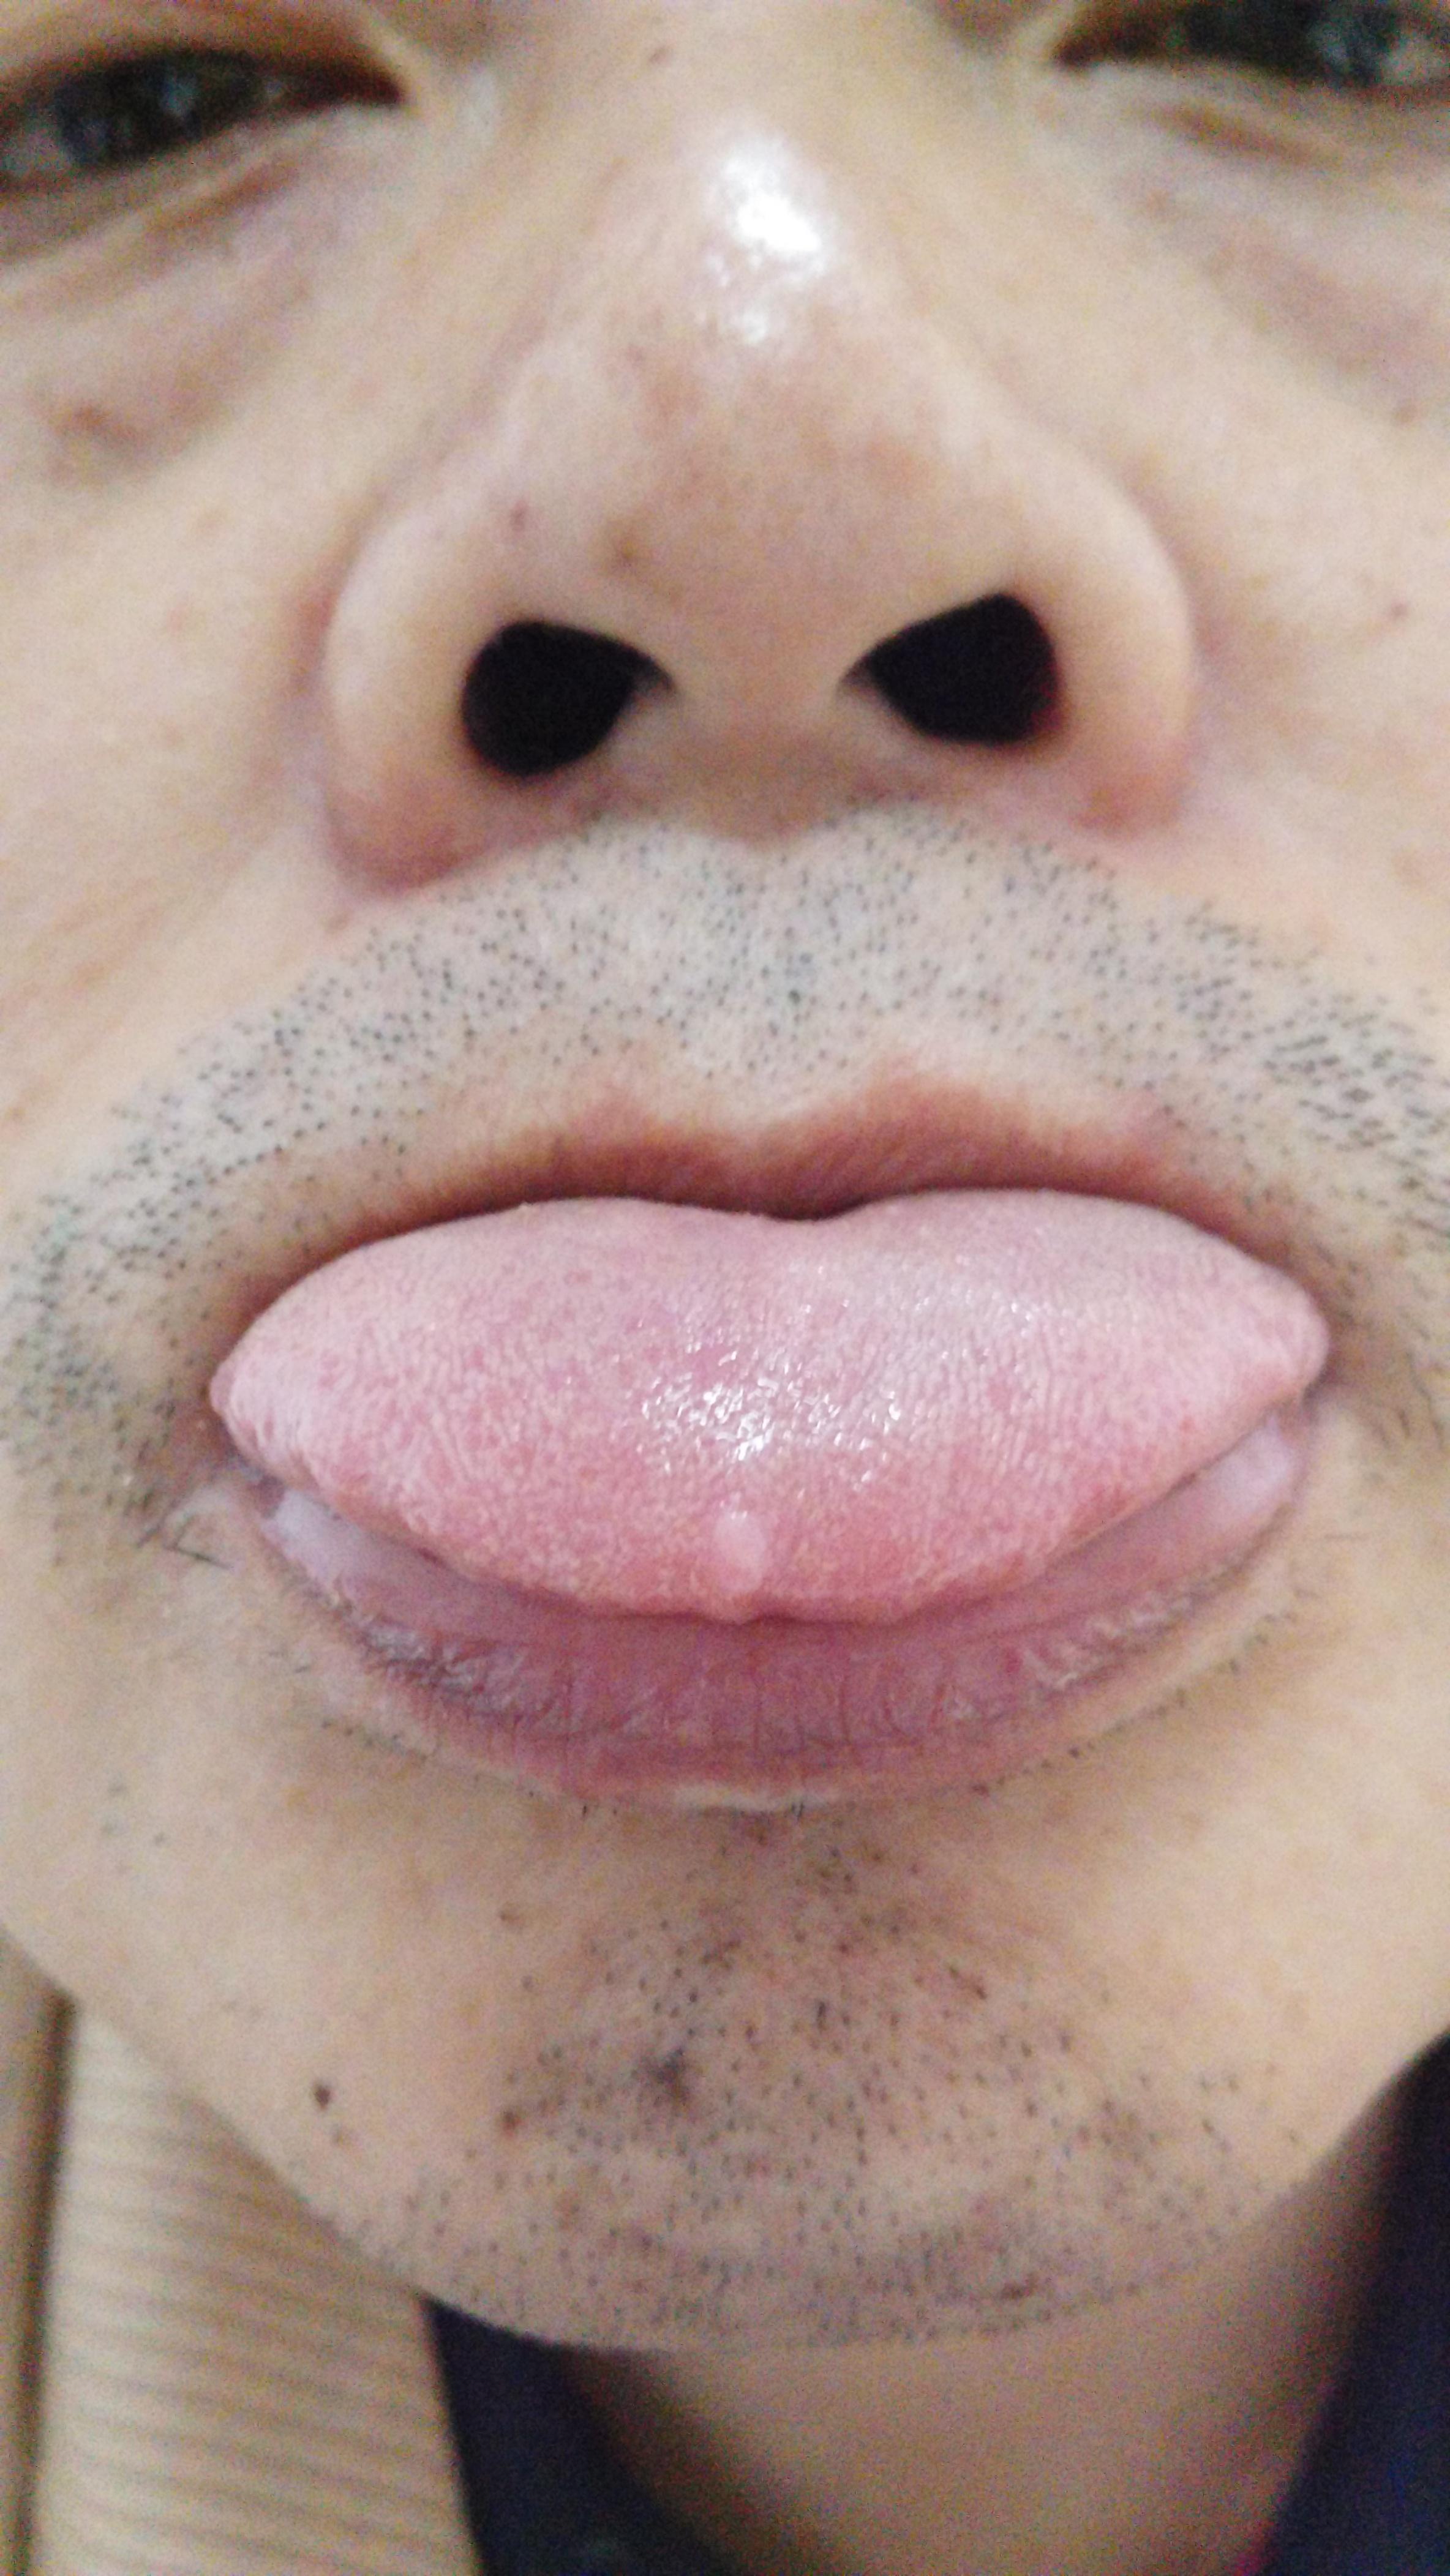 慢性舌叶状乳头炎症状图片